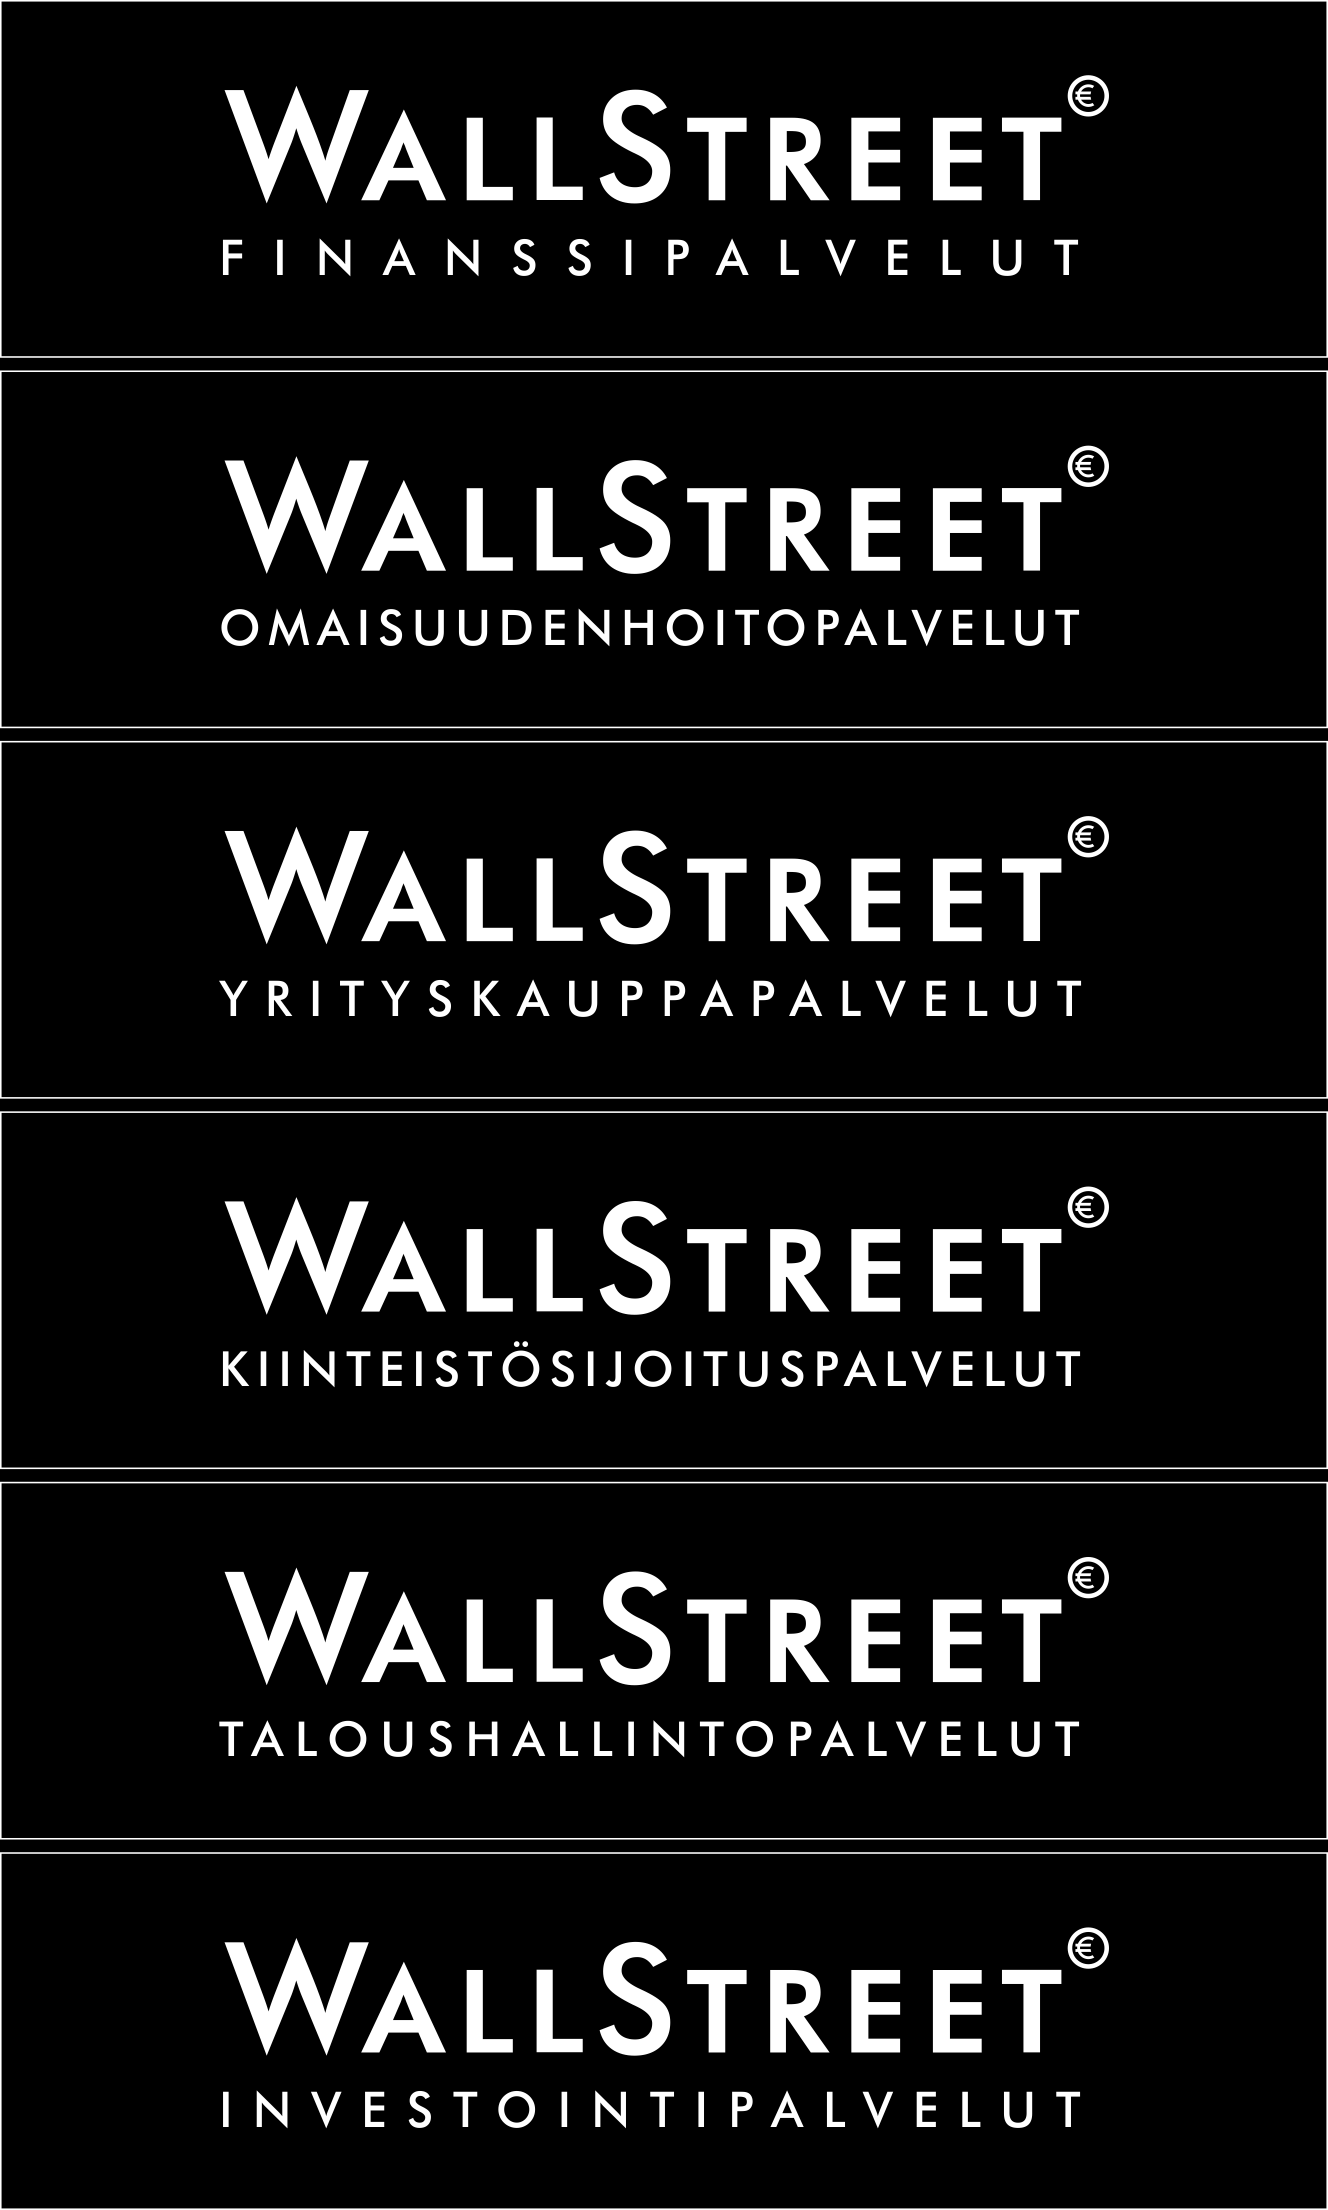 sijoitusaikana Sijoitustuotteen tarjoaja on Wallstreet Omaisuudenhoitopalvelut (Wallstreet Asset Management Oy) ja liikkeeseenlaskija on UBS AG. Merkintäaika päättyy 12.2.2015.